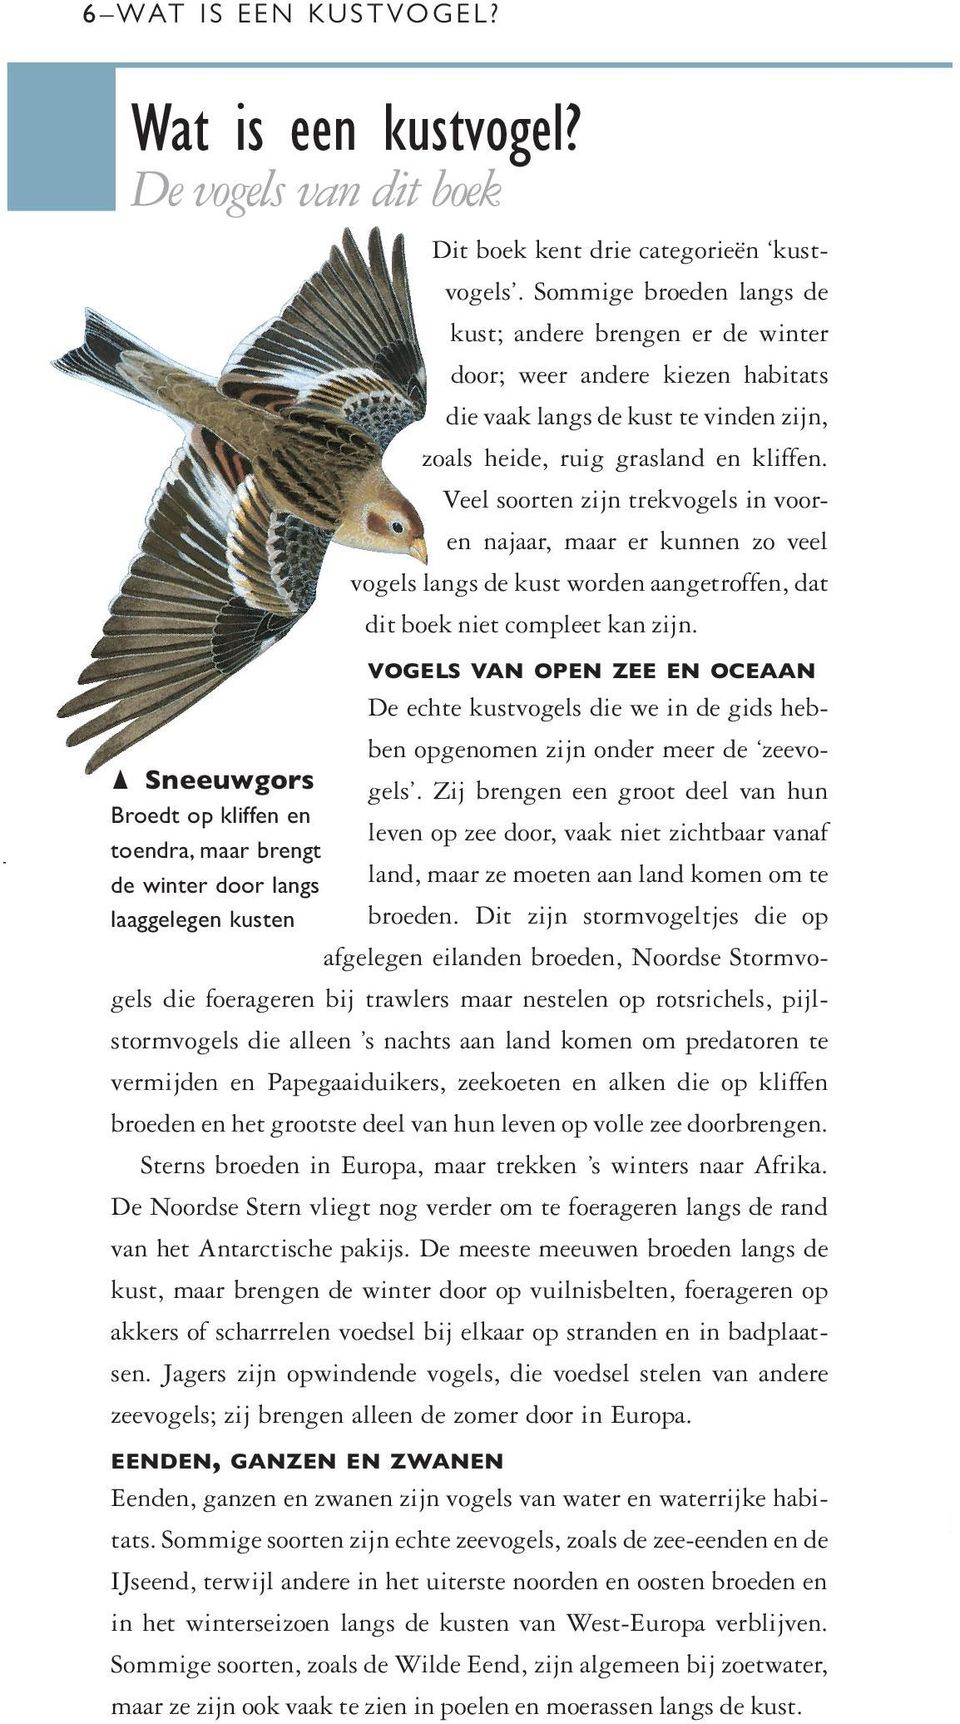 Veel soorten zijn trekvogels in vooren najaar, maar er kunnen zo veel vogels langs de kust worden aangetroffen, dat dit boek niet compleet kan zijn.